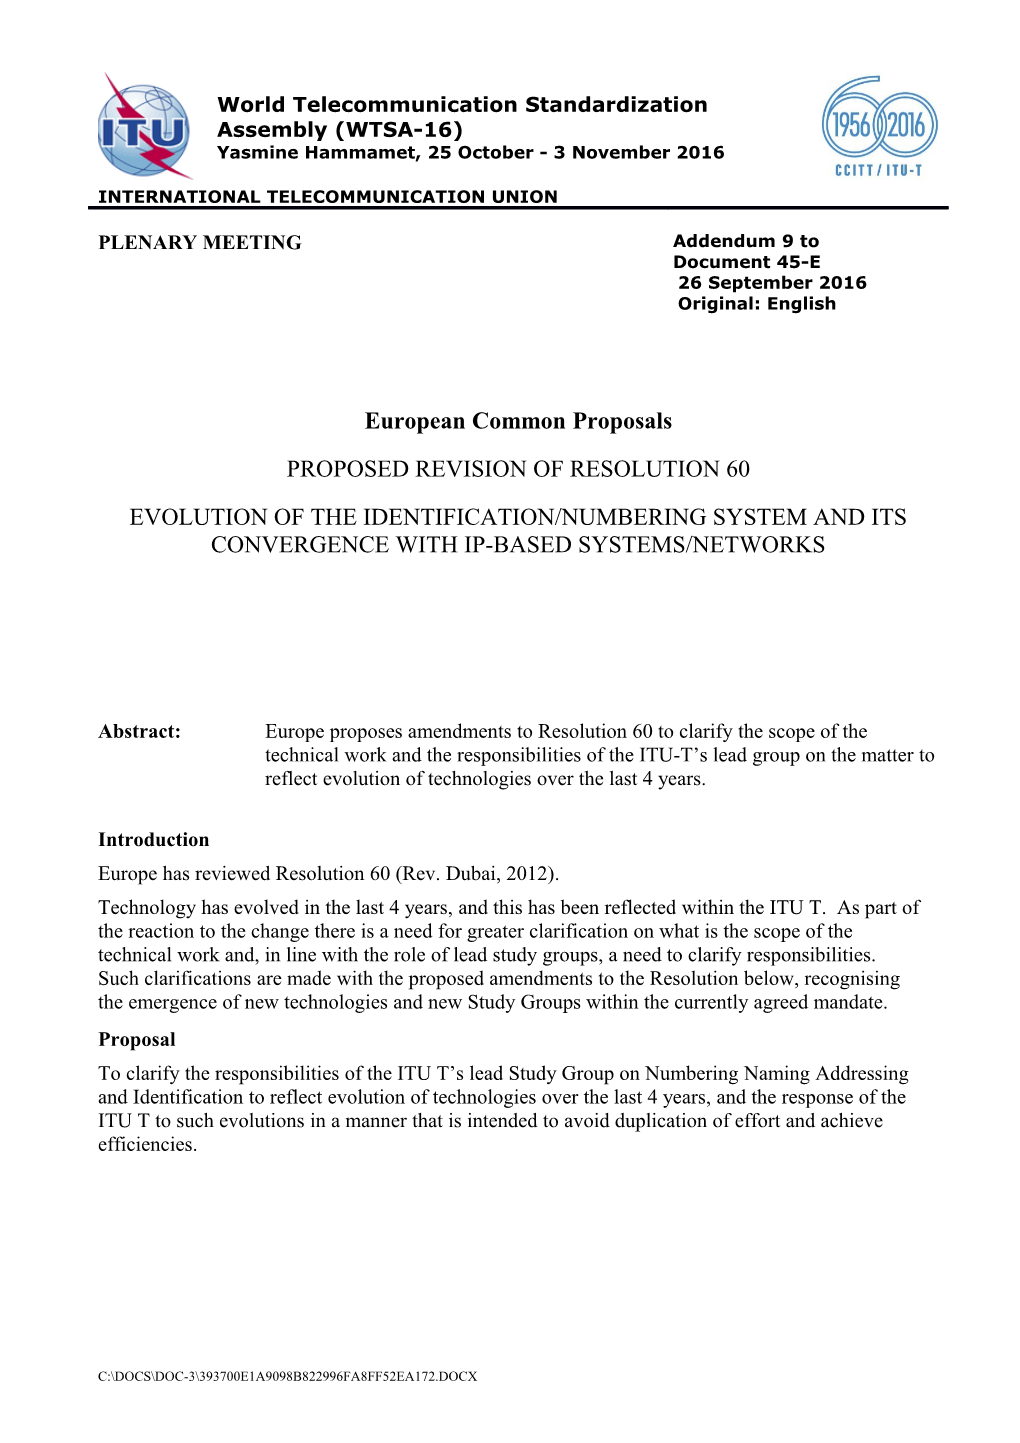 Europe Has Reviewed Resolution 60 (Rev. Dubai, 2012)